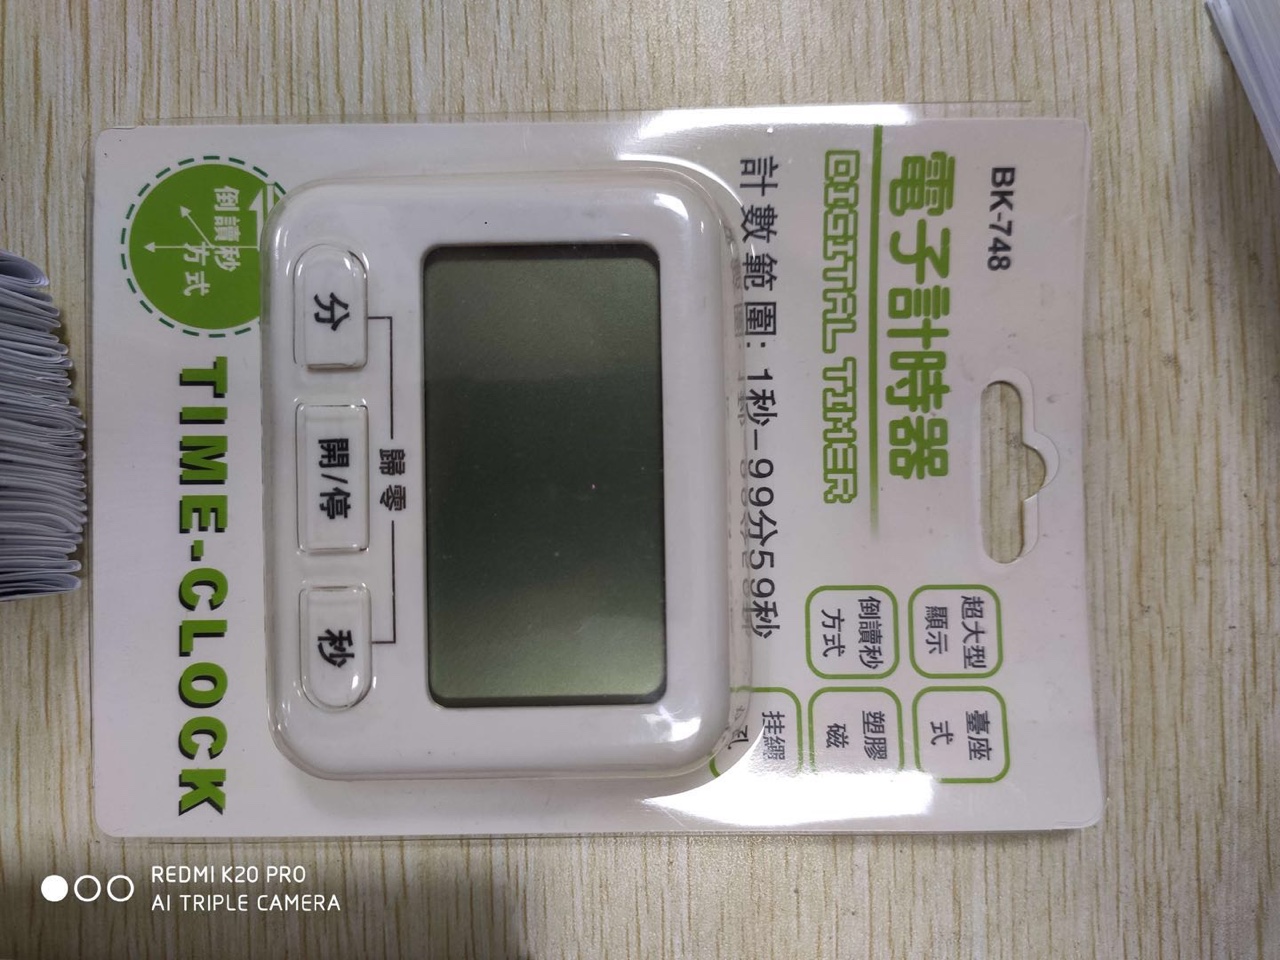 BK748计时器99分59电子计时器 厨房 中文显示 大屏幕定时器图